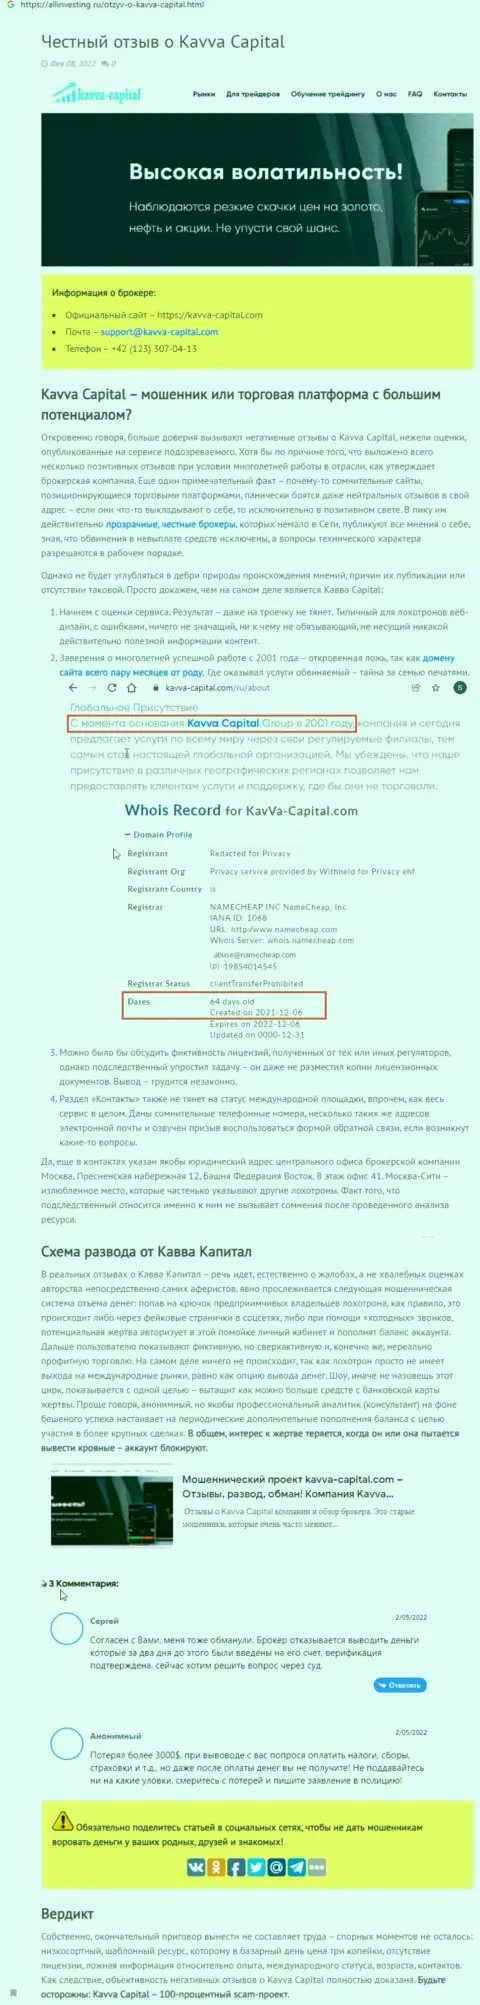 Kavva Capital: обзор мошеннической организации и отзывы, потерявших денежные активы доверчивых клиентов